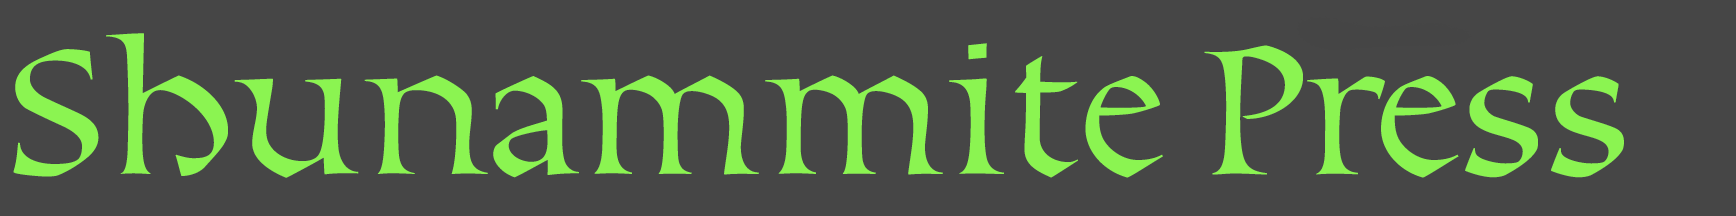 Shunammite Press